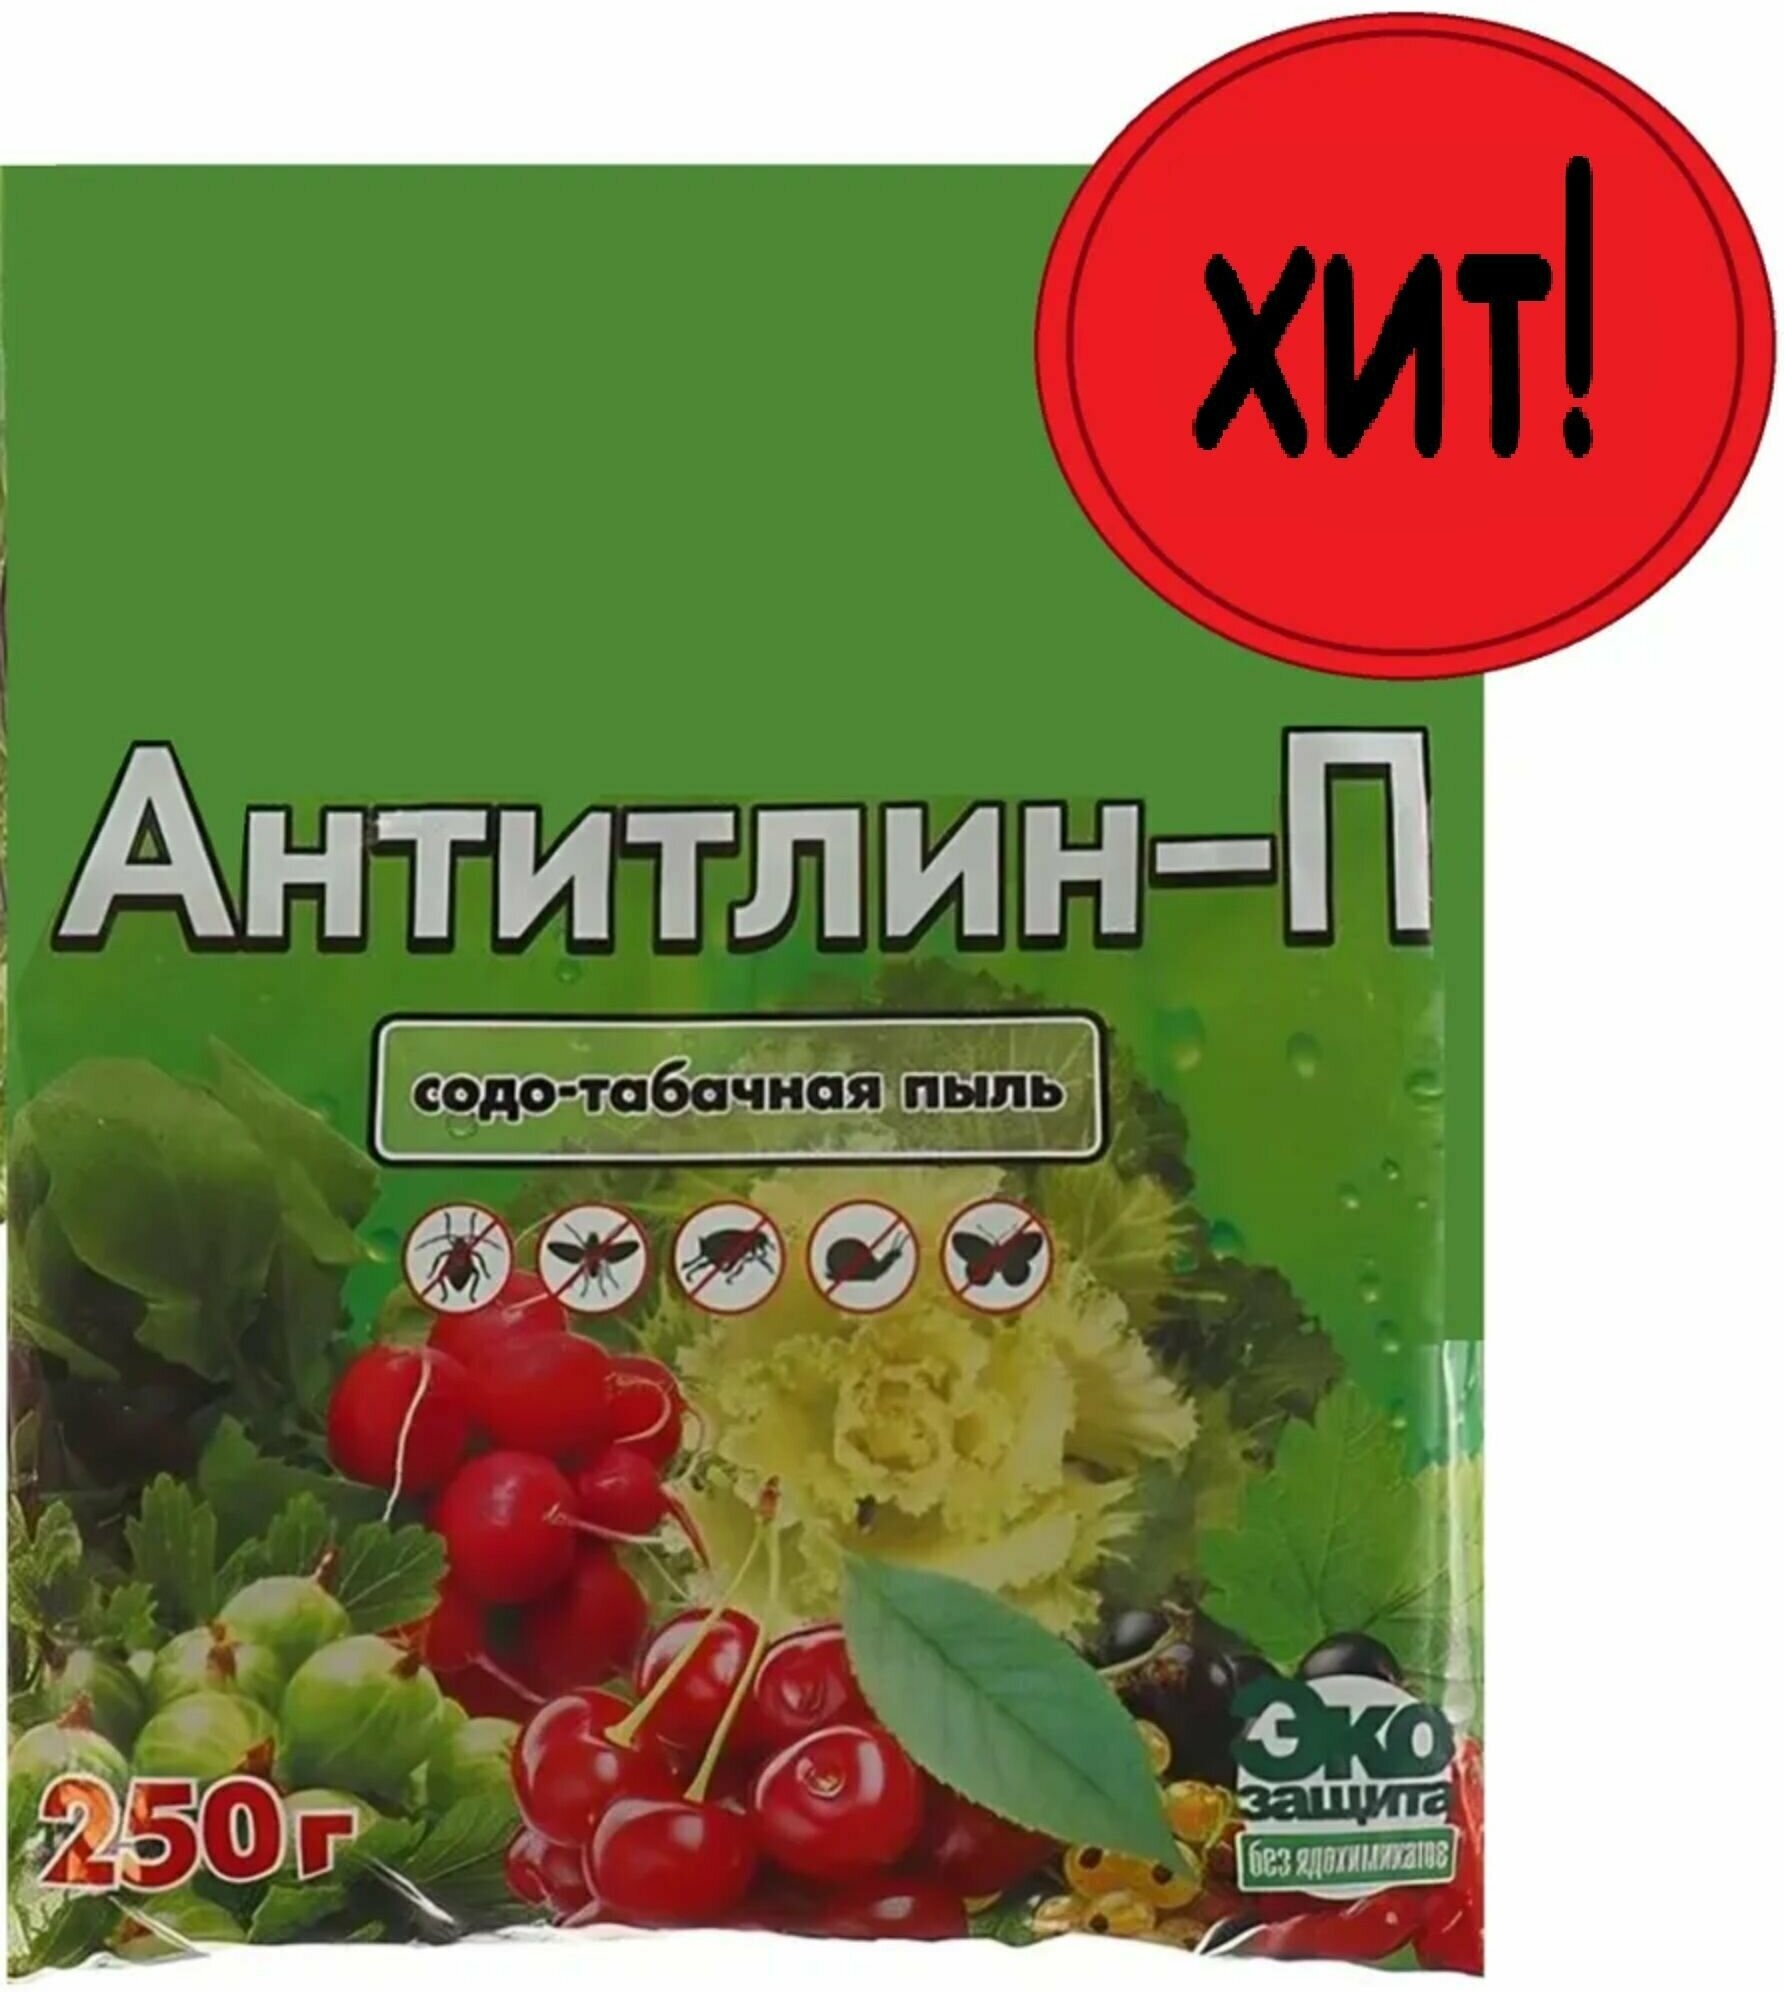 Удобрение "Антитлин" 0.25 кг, органический порошок для обработки посевов от тли, капустной моли и других насекомых, стимулирует развитие растений